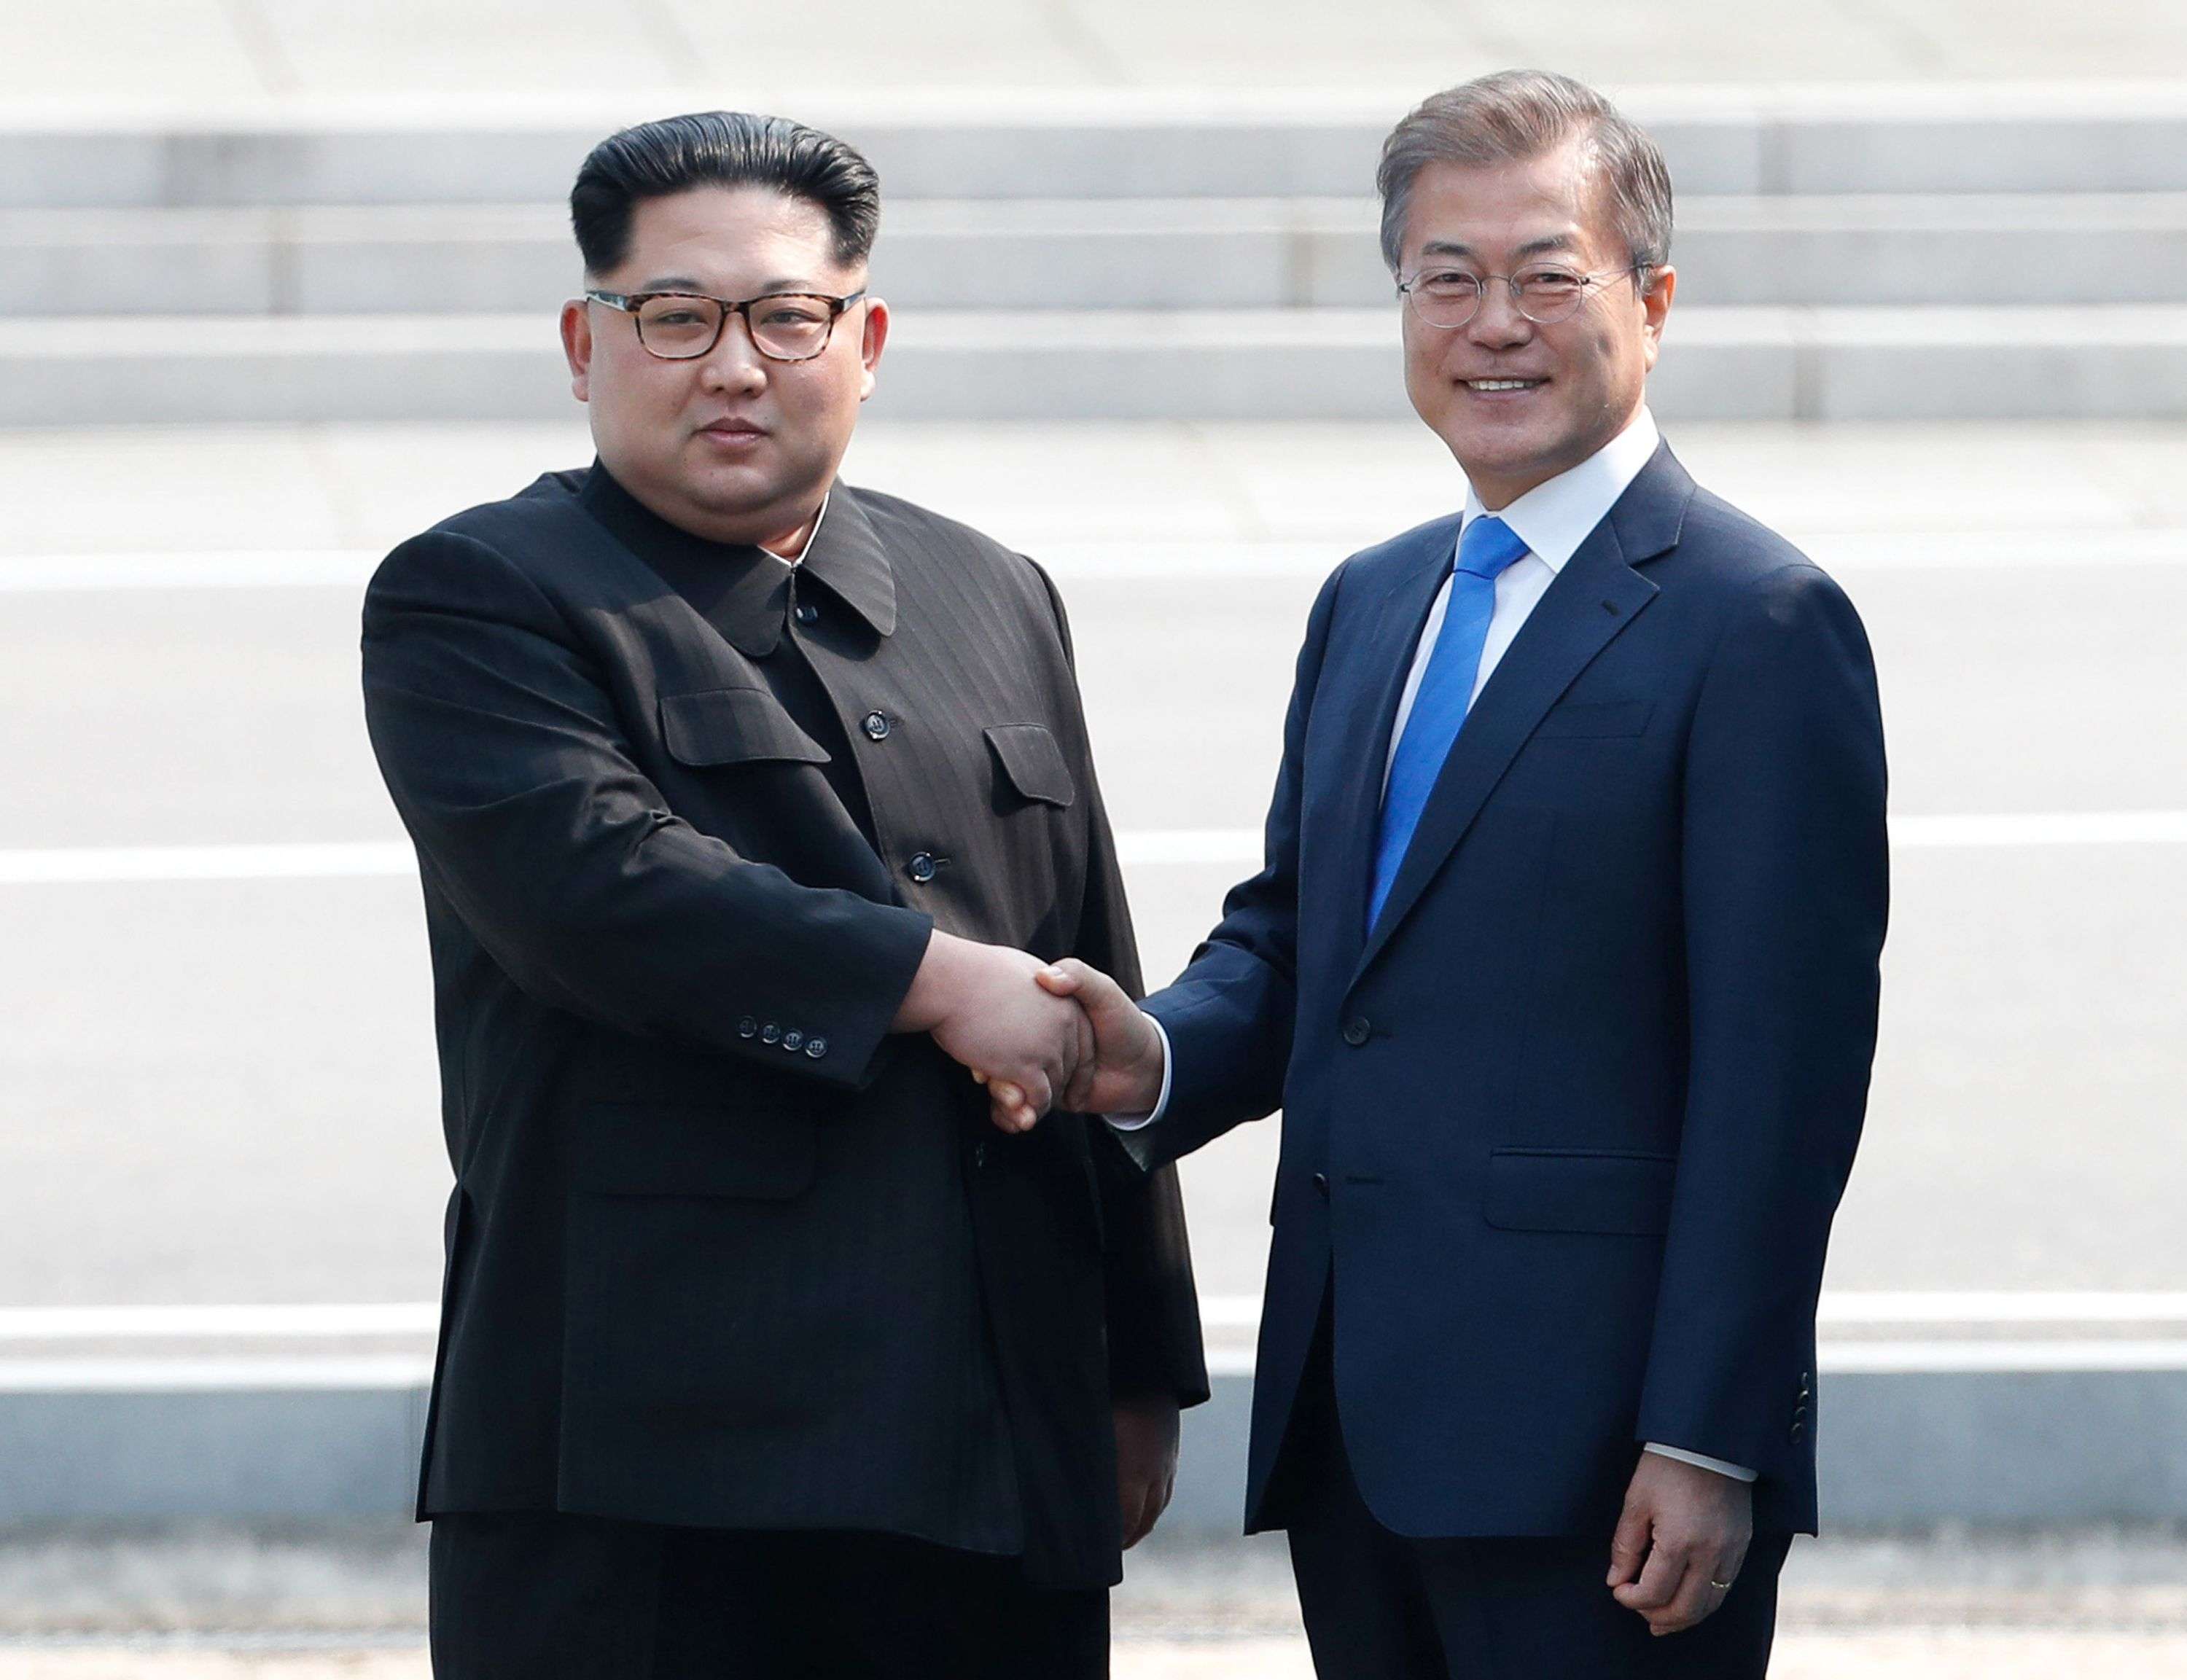 الزعيمان على موعد جديد لتحقيق السلام